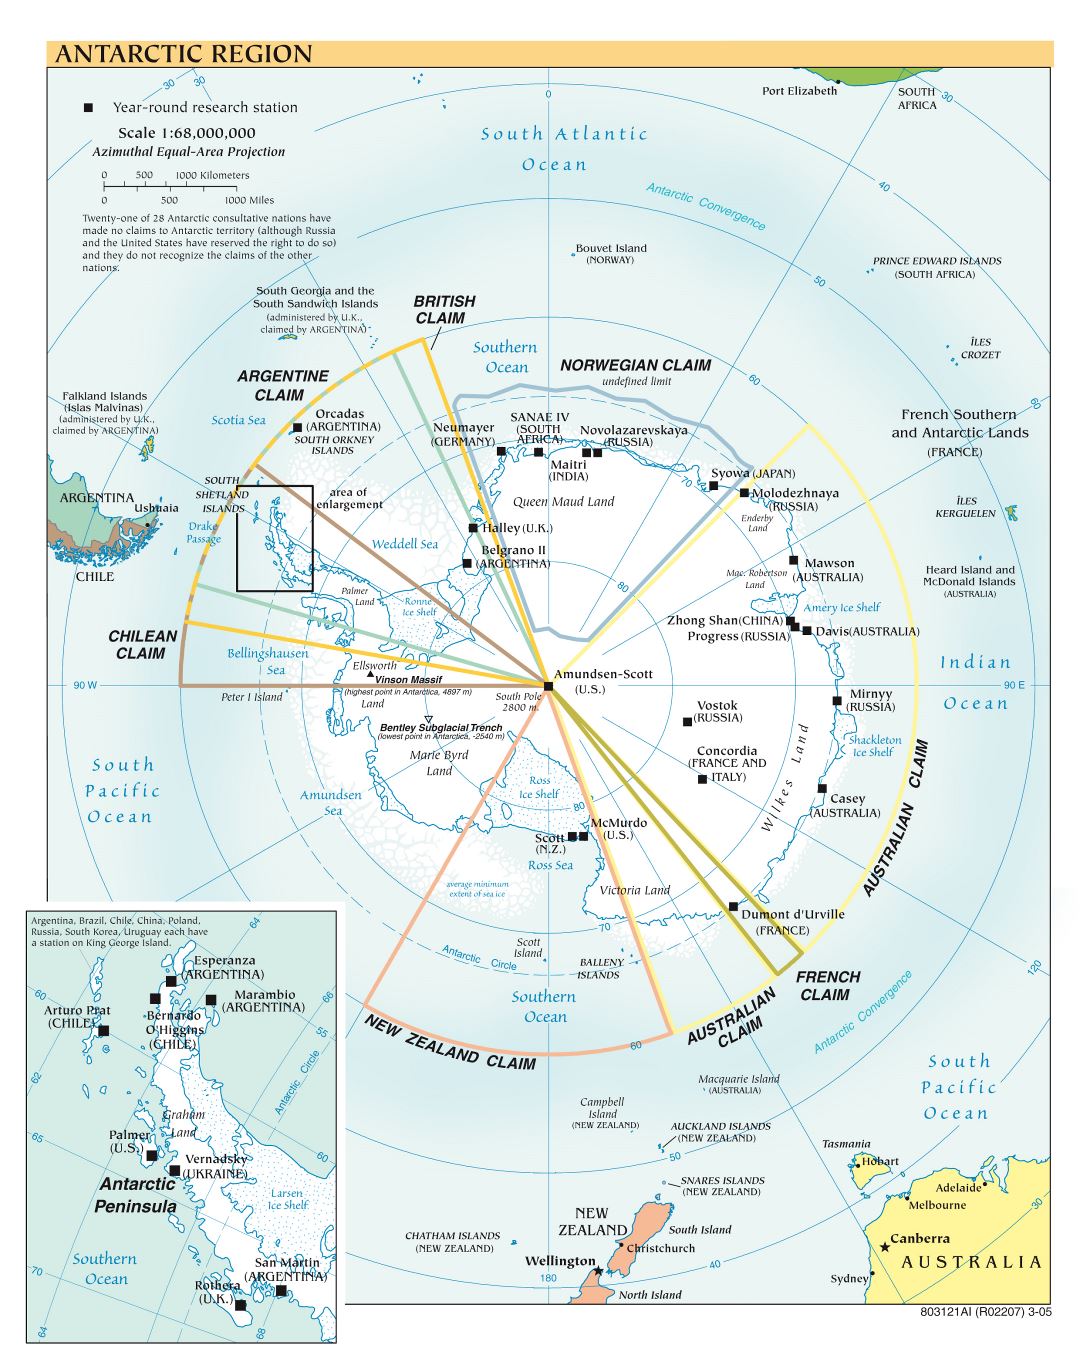 Mapa político a gran escala de la Región Antártica - 2005